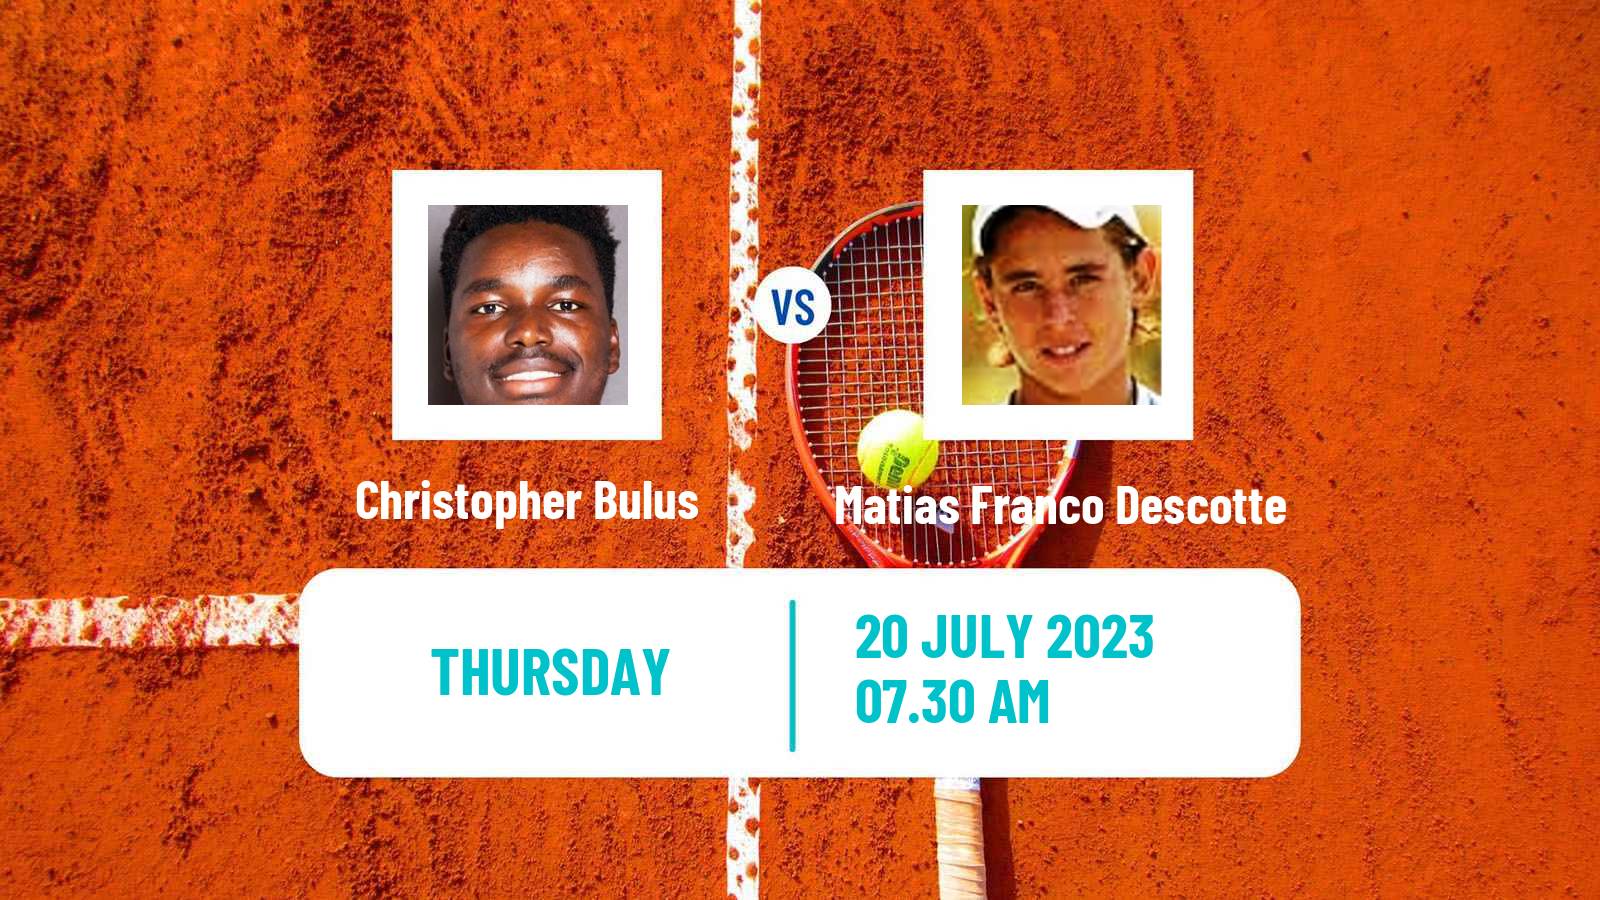 Tennis ITF M25 Brazzaville Men Christopher Bulus - Matias Franco Descotte